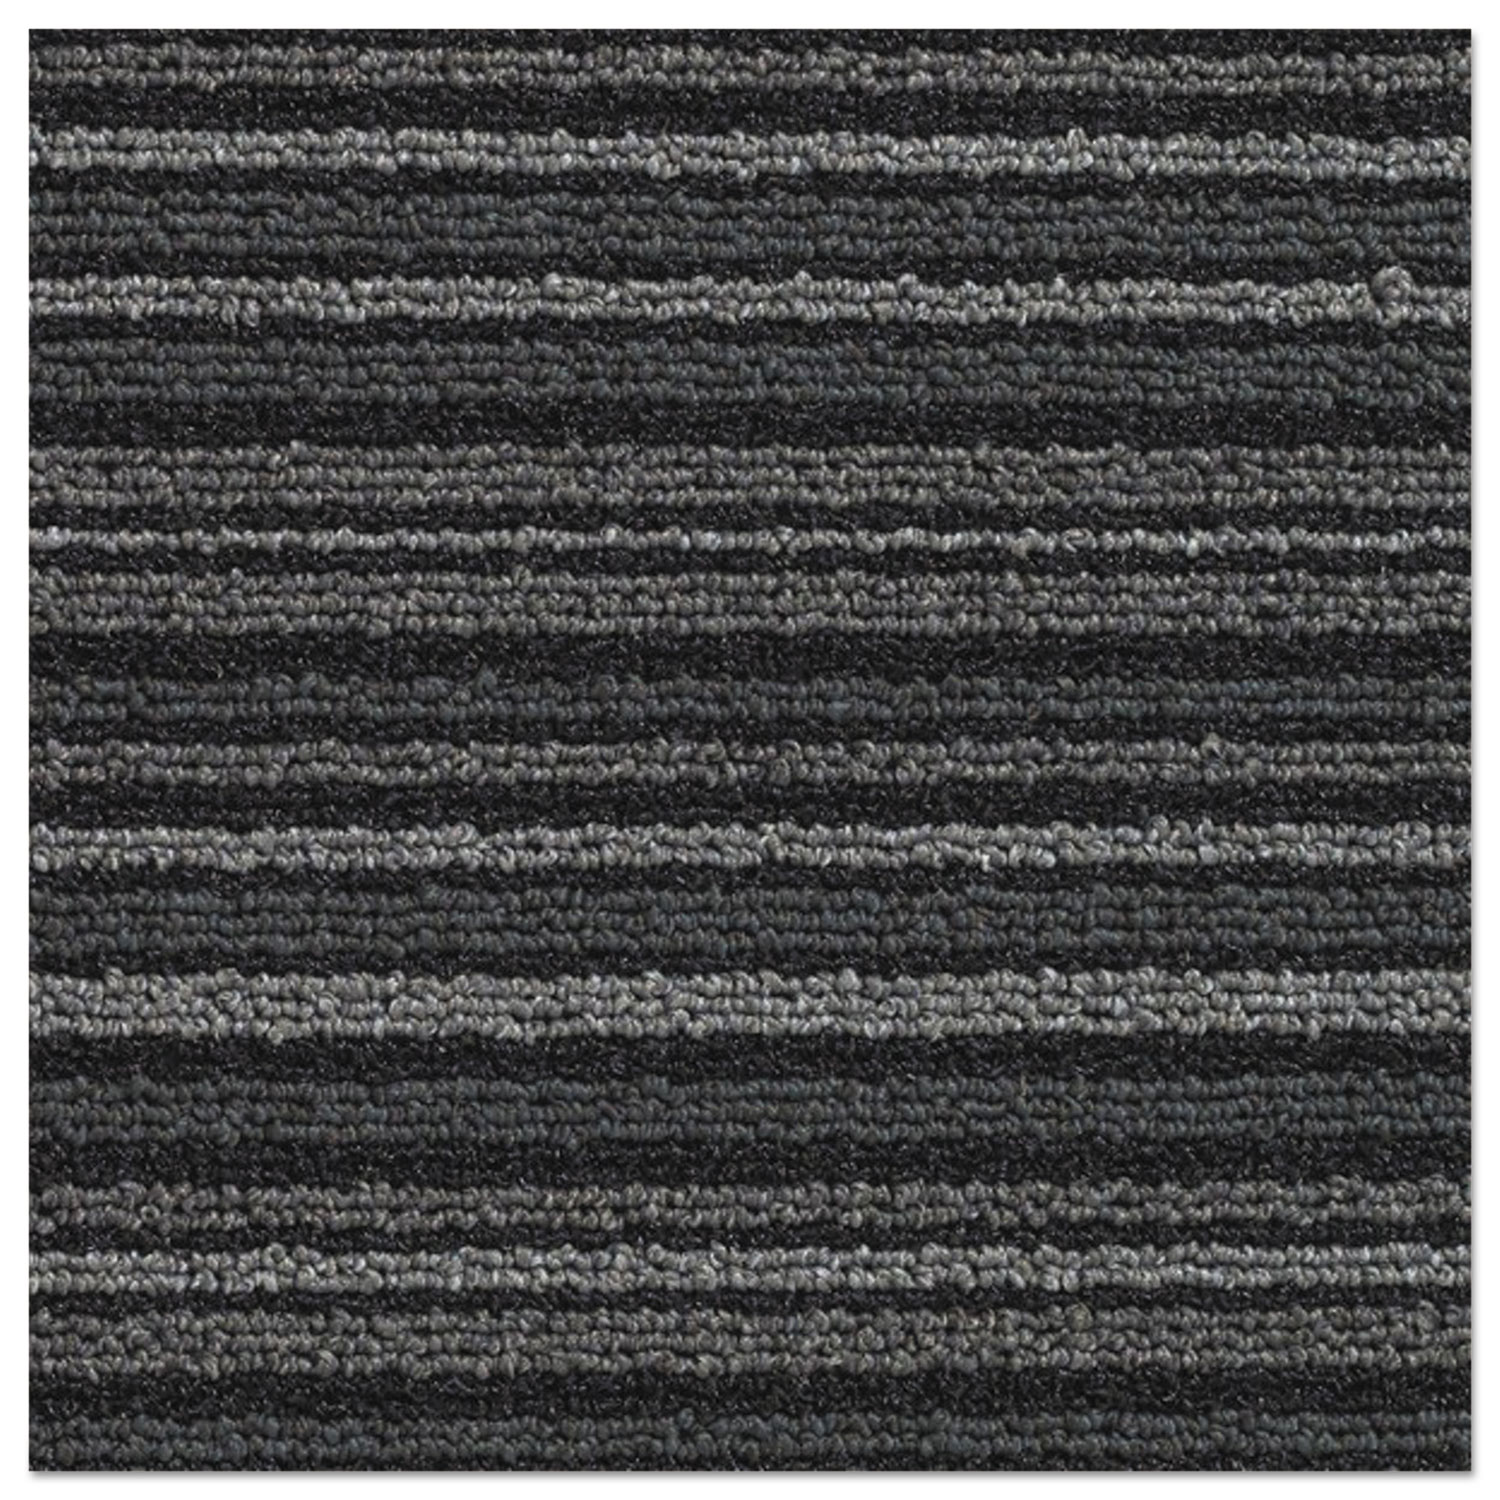 Nomad 7000 Heavy Traffic Carpet Matting, Nylon/Polypropylene, 72 x 120, Gray